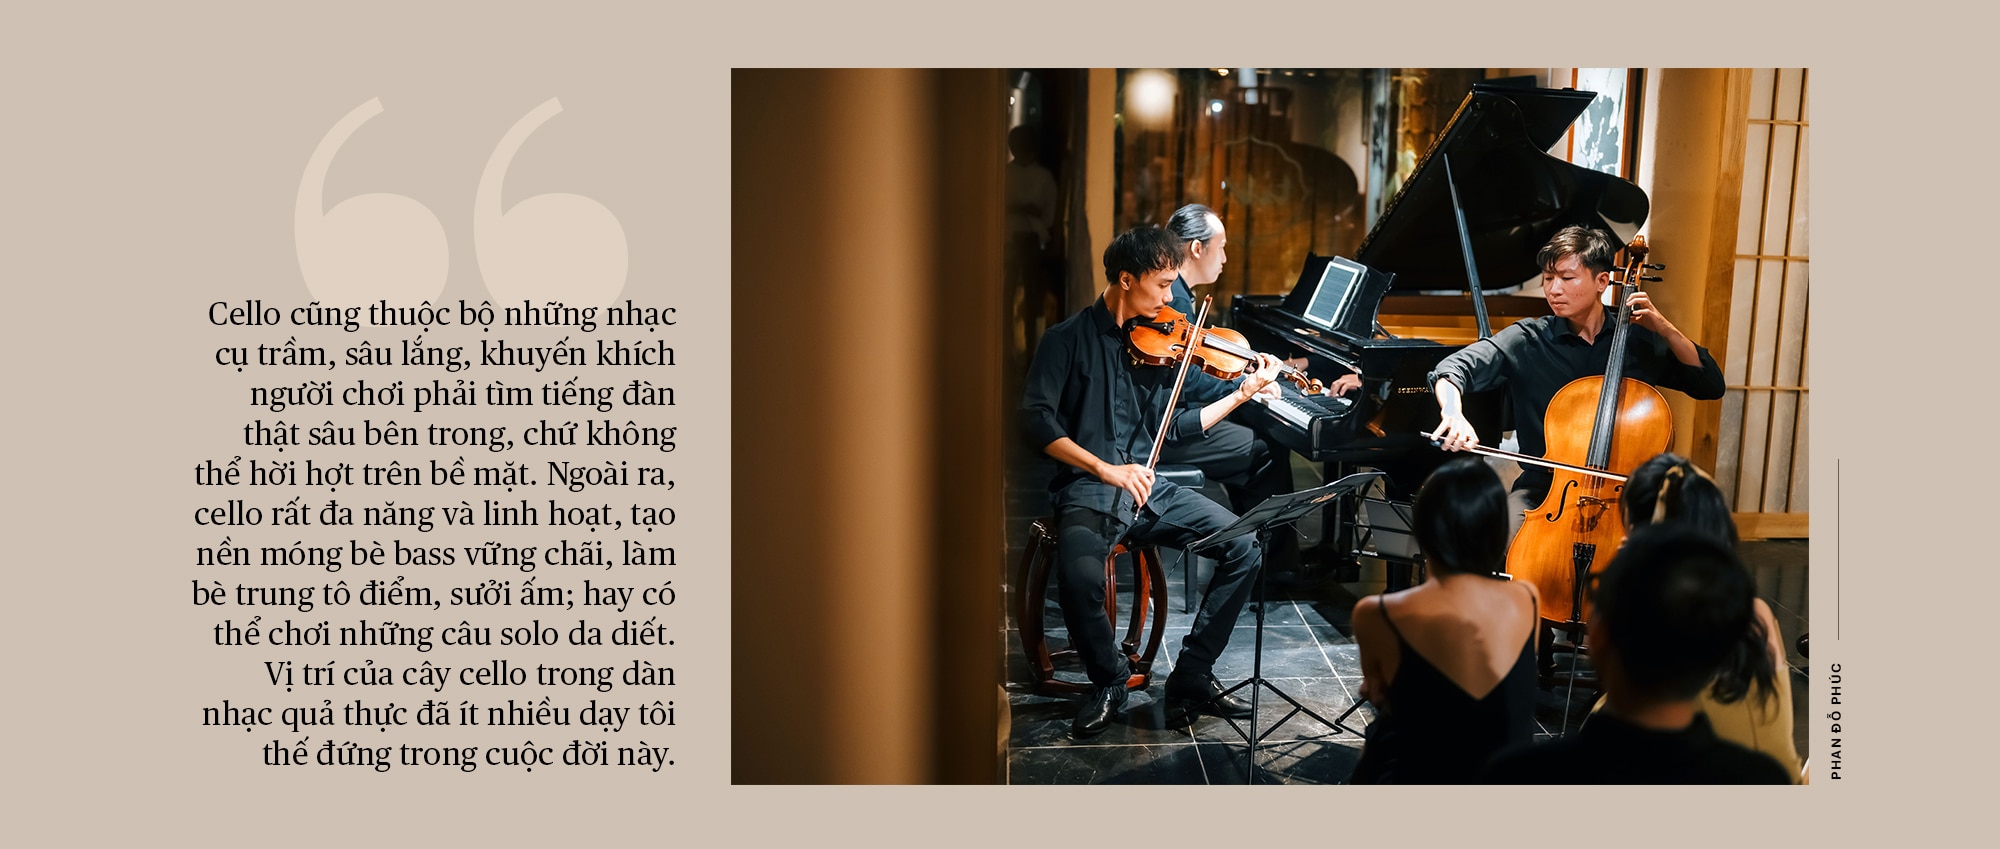 Nhạc trưởng Phan Đỗ Phúc:
“Vị trí cây cello trong dàn nhạc dạy tôi thế đứng trong cuộc đời”- Ảnh 9.